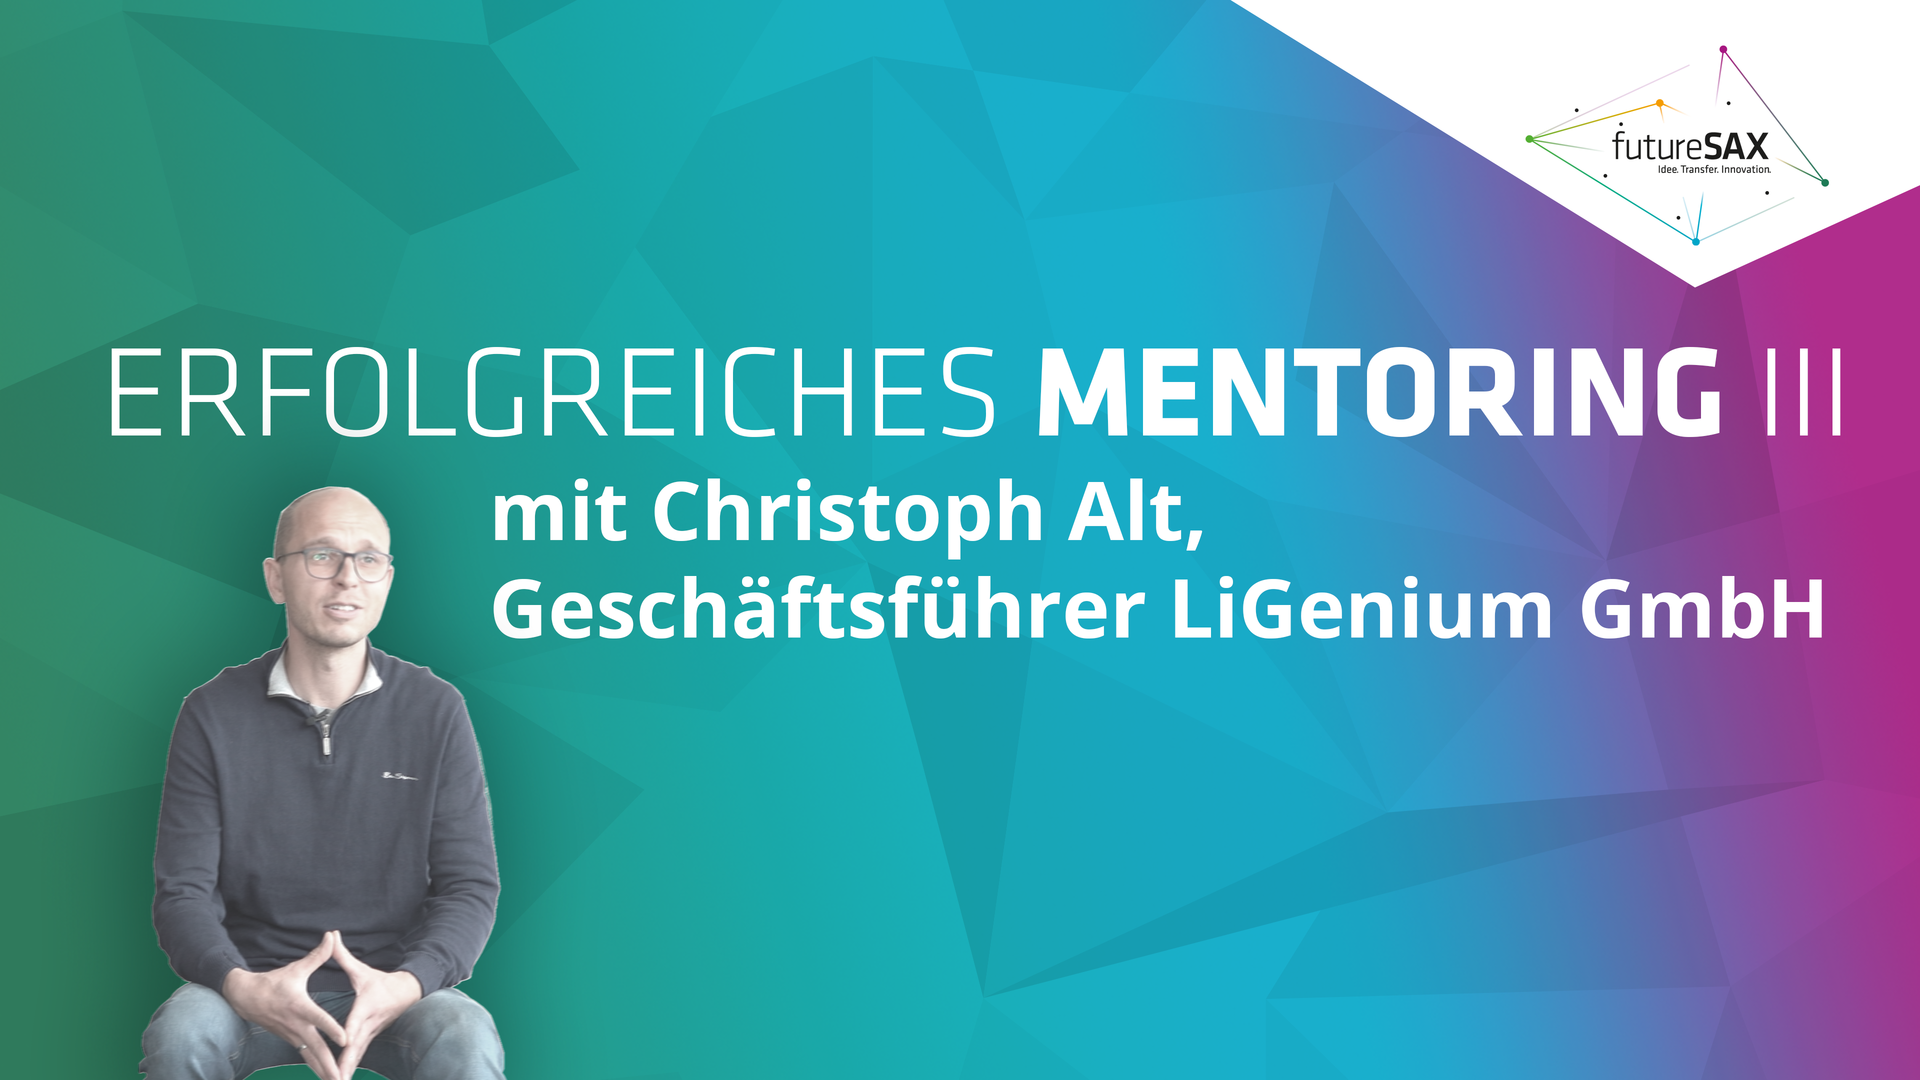 In der neuen Ausgabe in der Video-Reihe Erfolgreiches Mentoring Teil 3 haben wir Christoph Alt, Geschäftsführer der LiGenium GmbH, besucht und mit ihm über seine Benefits beim Mentoring gesprochen.